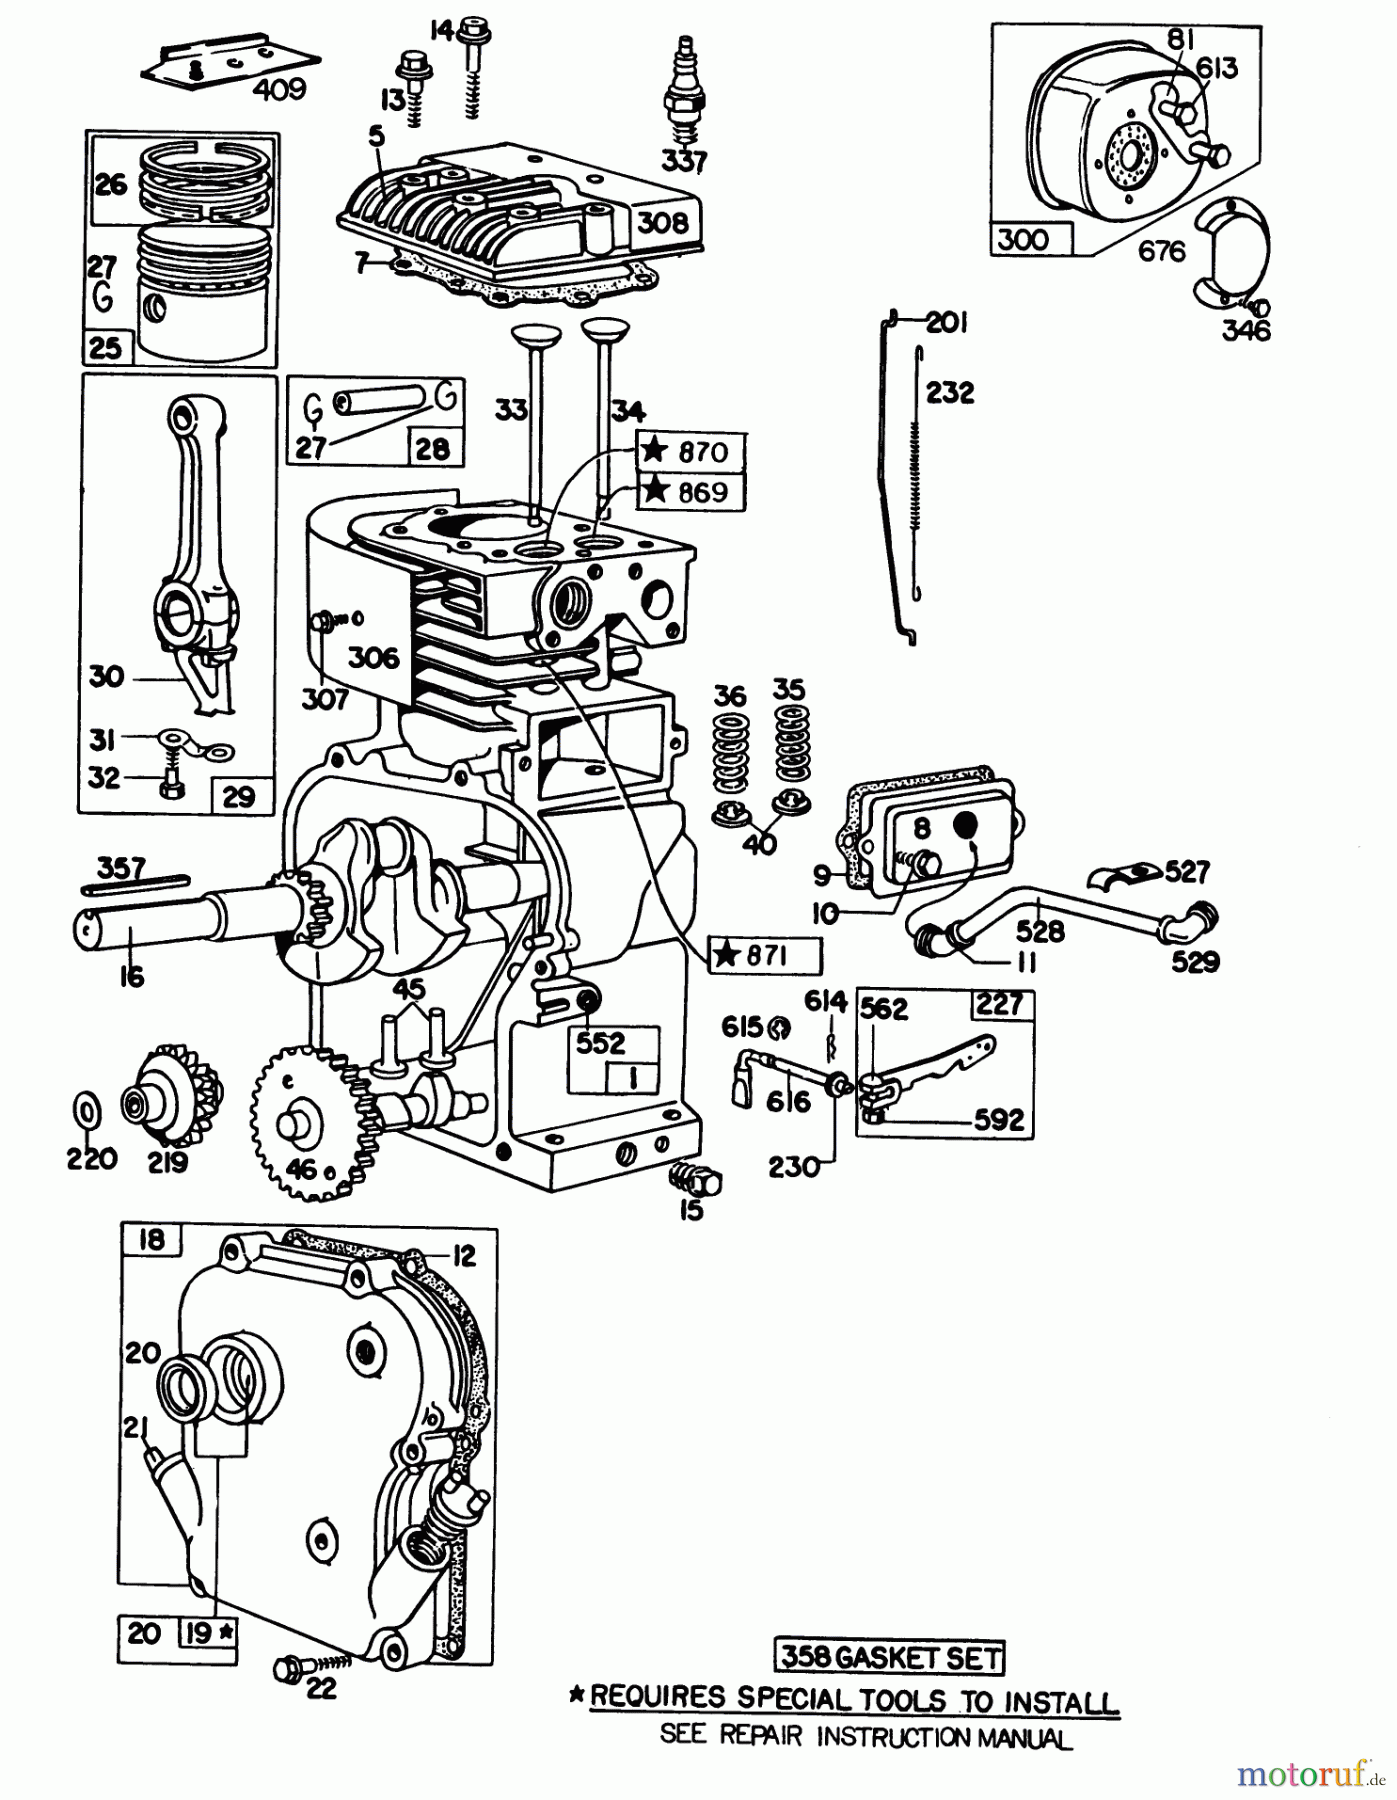  Laubbläser / Laubsauger 62912 - Toro 5 hp Lawn Vacuum (SN: 3000001 - 3999999) (1983) ENGINE MODEL NO. 130202 TYPE 0600-01 BRIGGS & STRATTON